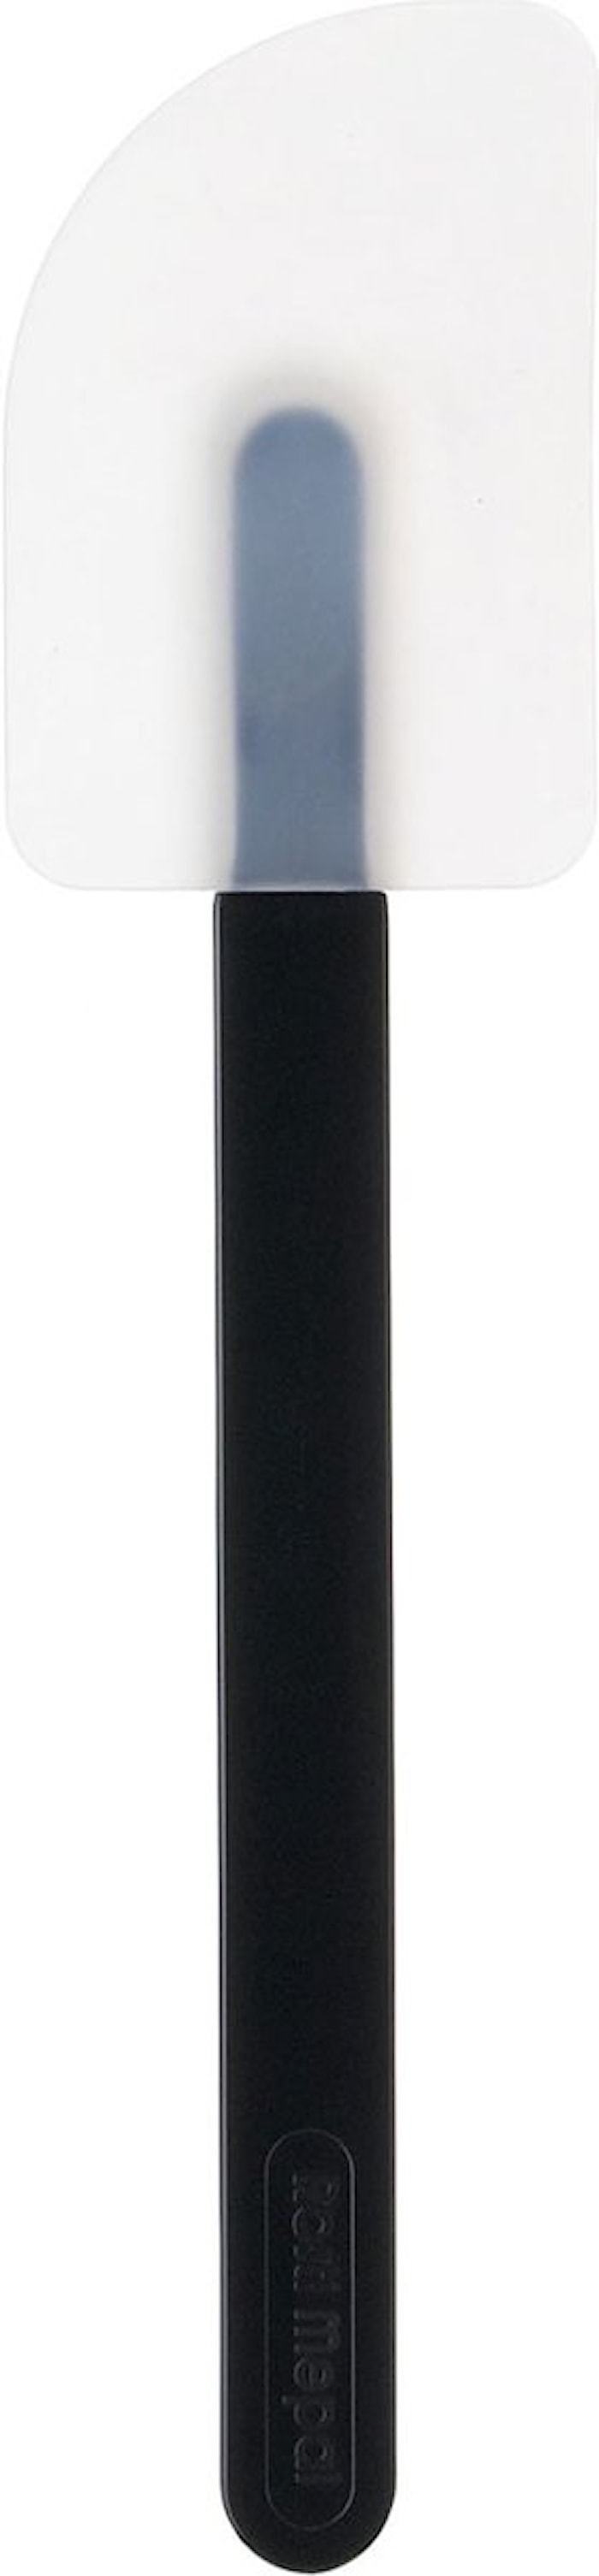 Slickepott Svart 26 cm